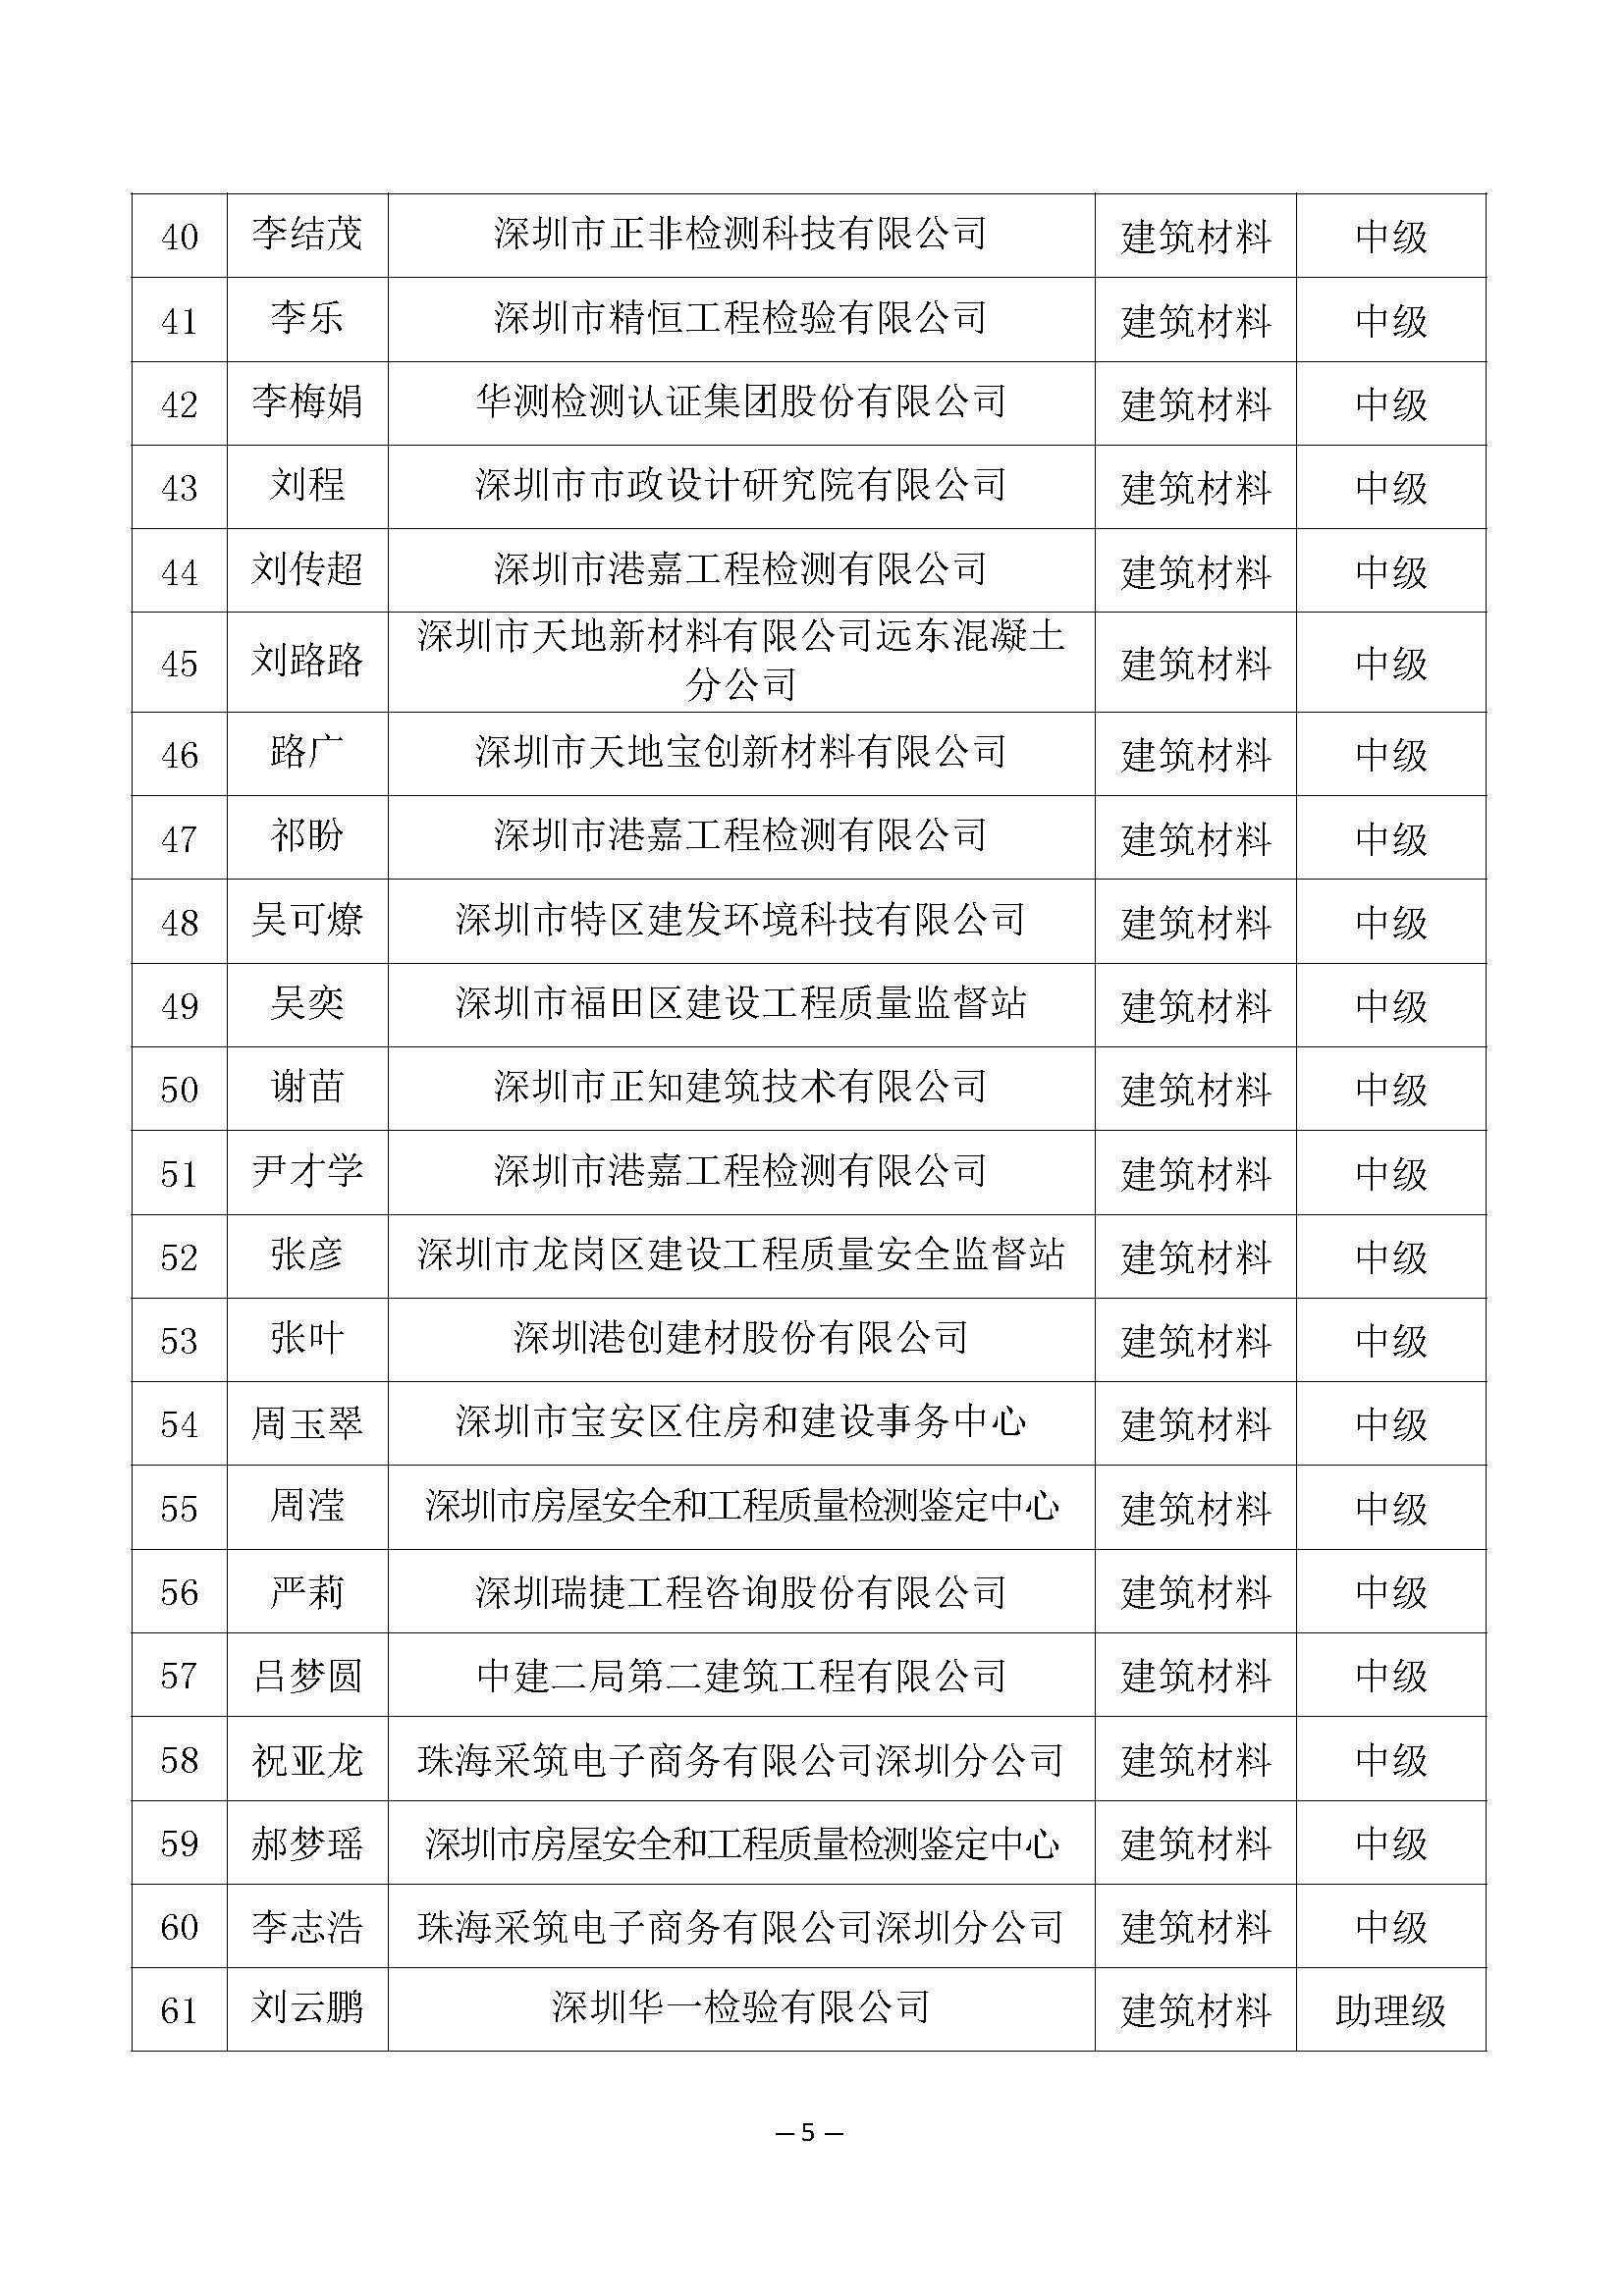 2021年度深圳市建筑材料专业高级职称评审委员会建筑材料专业高、中、初级职称评审通过人员公示_页面_5.jpg